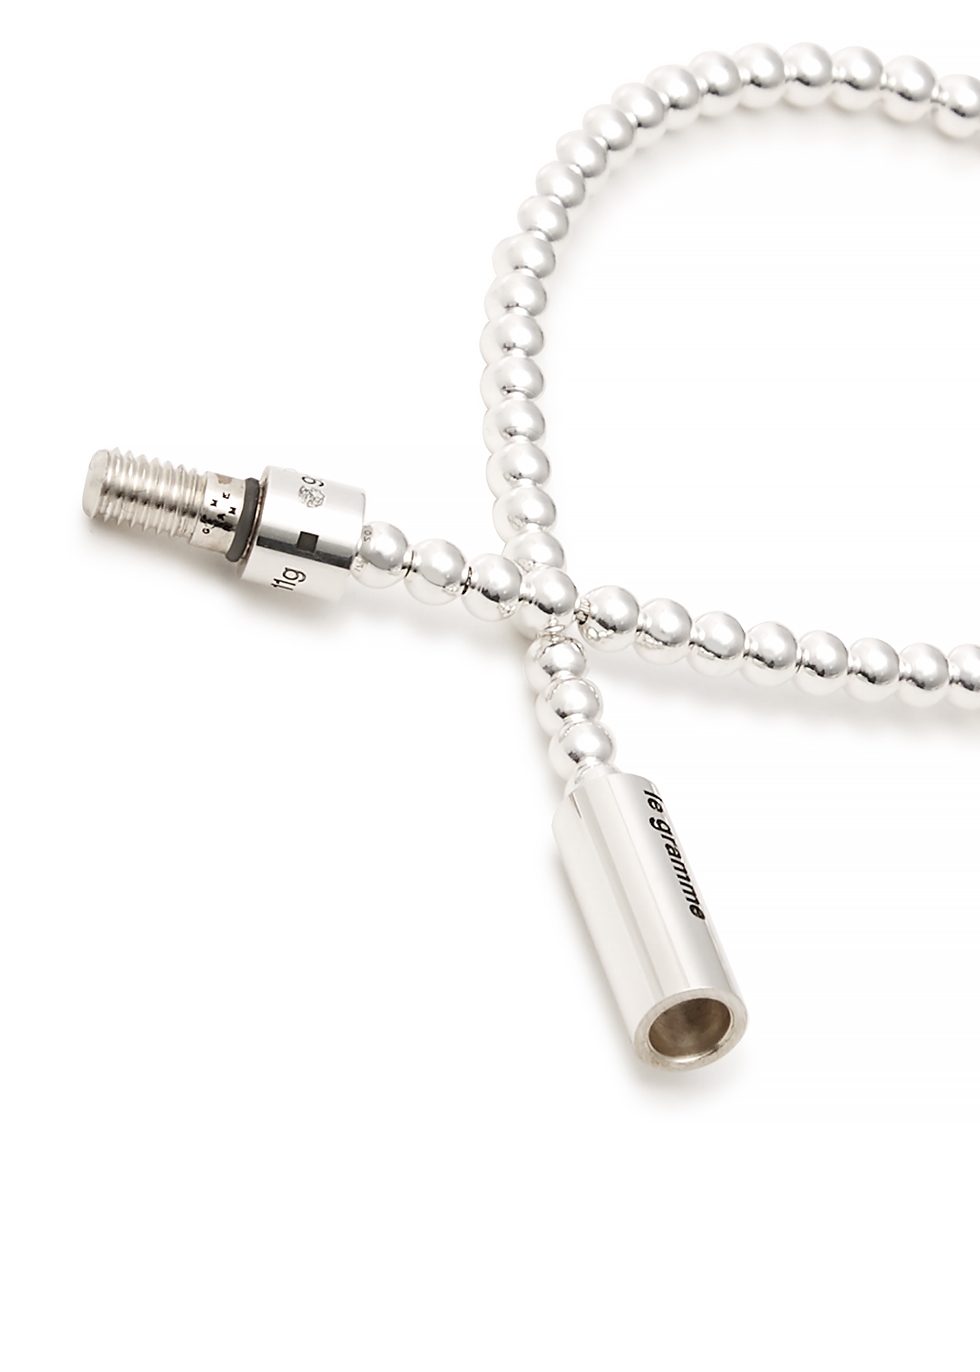 Le Gramme 11g polished sterling silver beads bracelet - Harvey Nichols